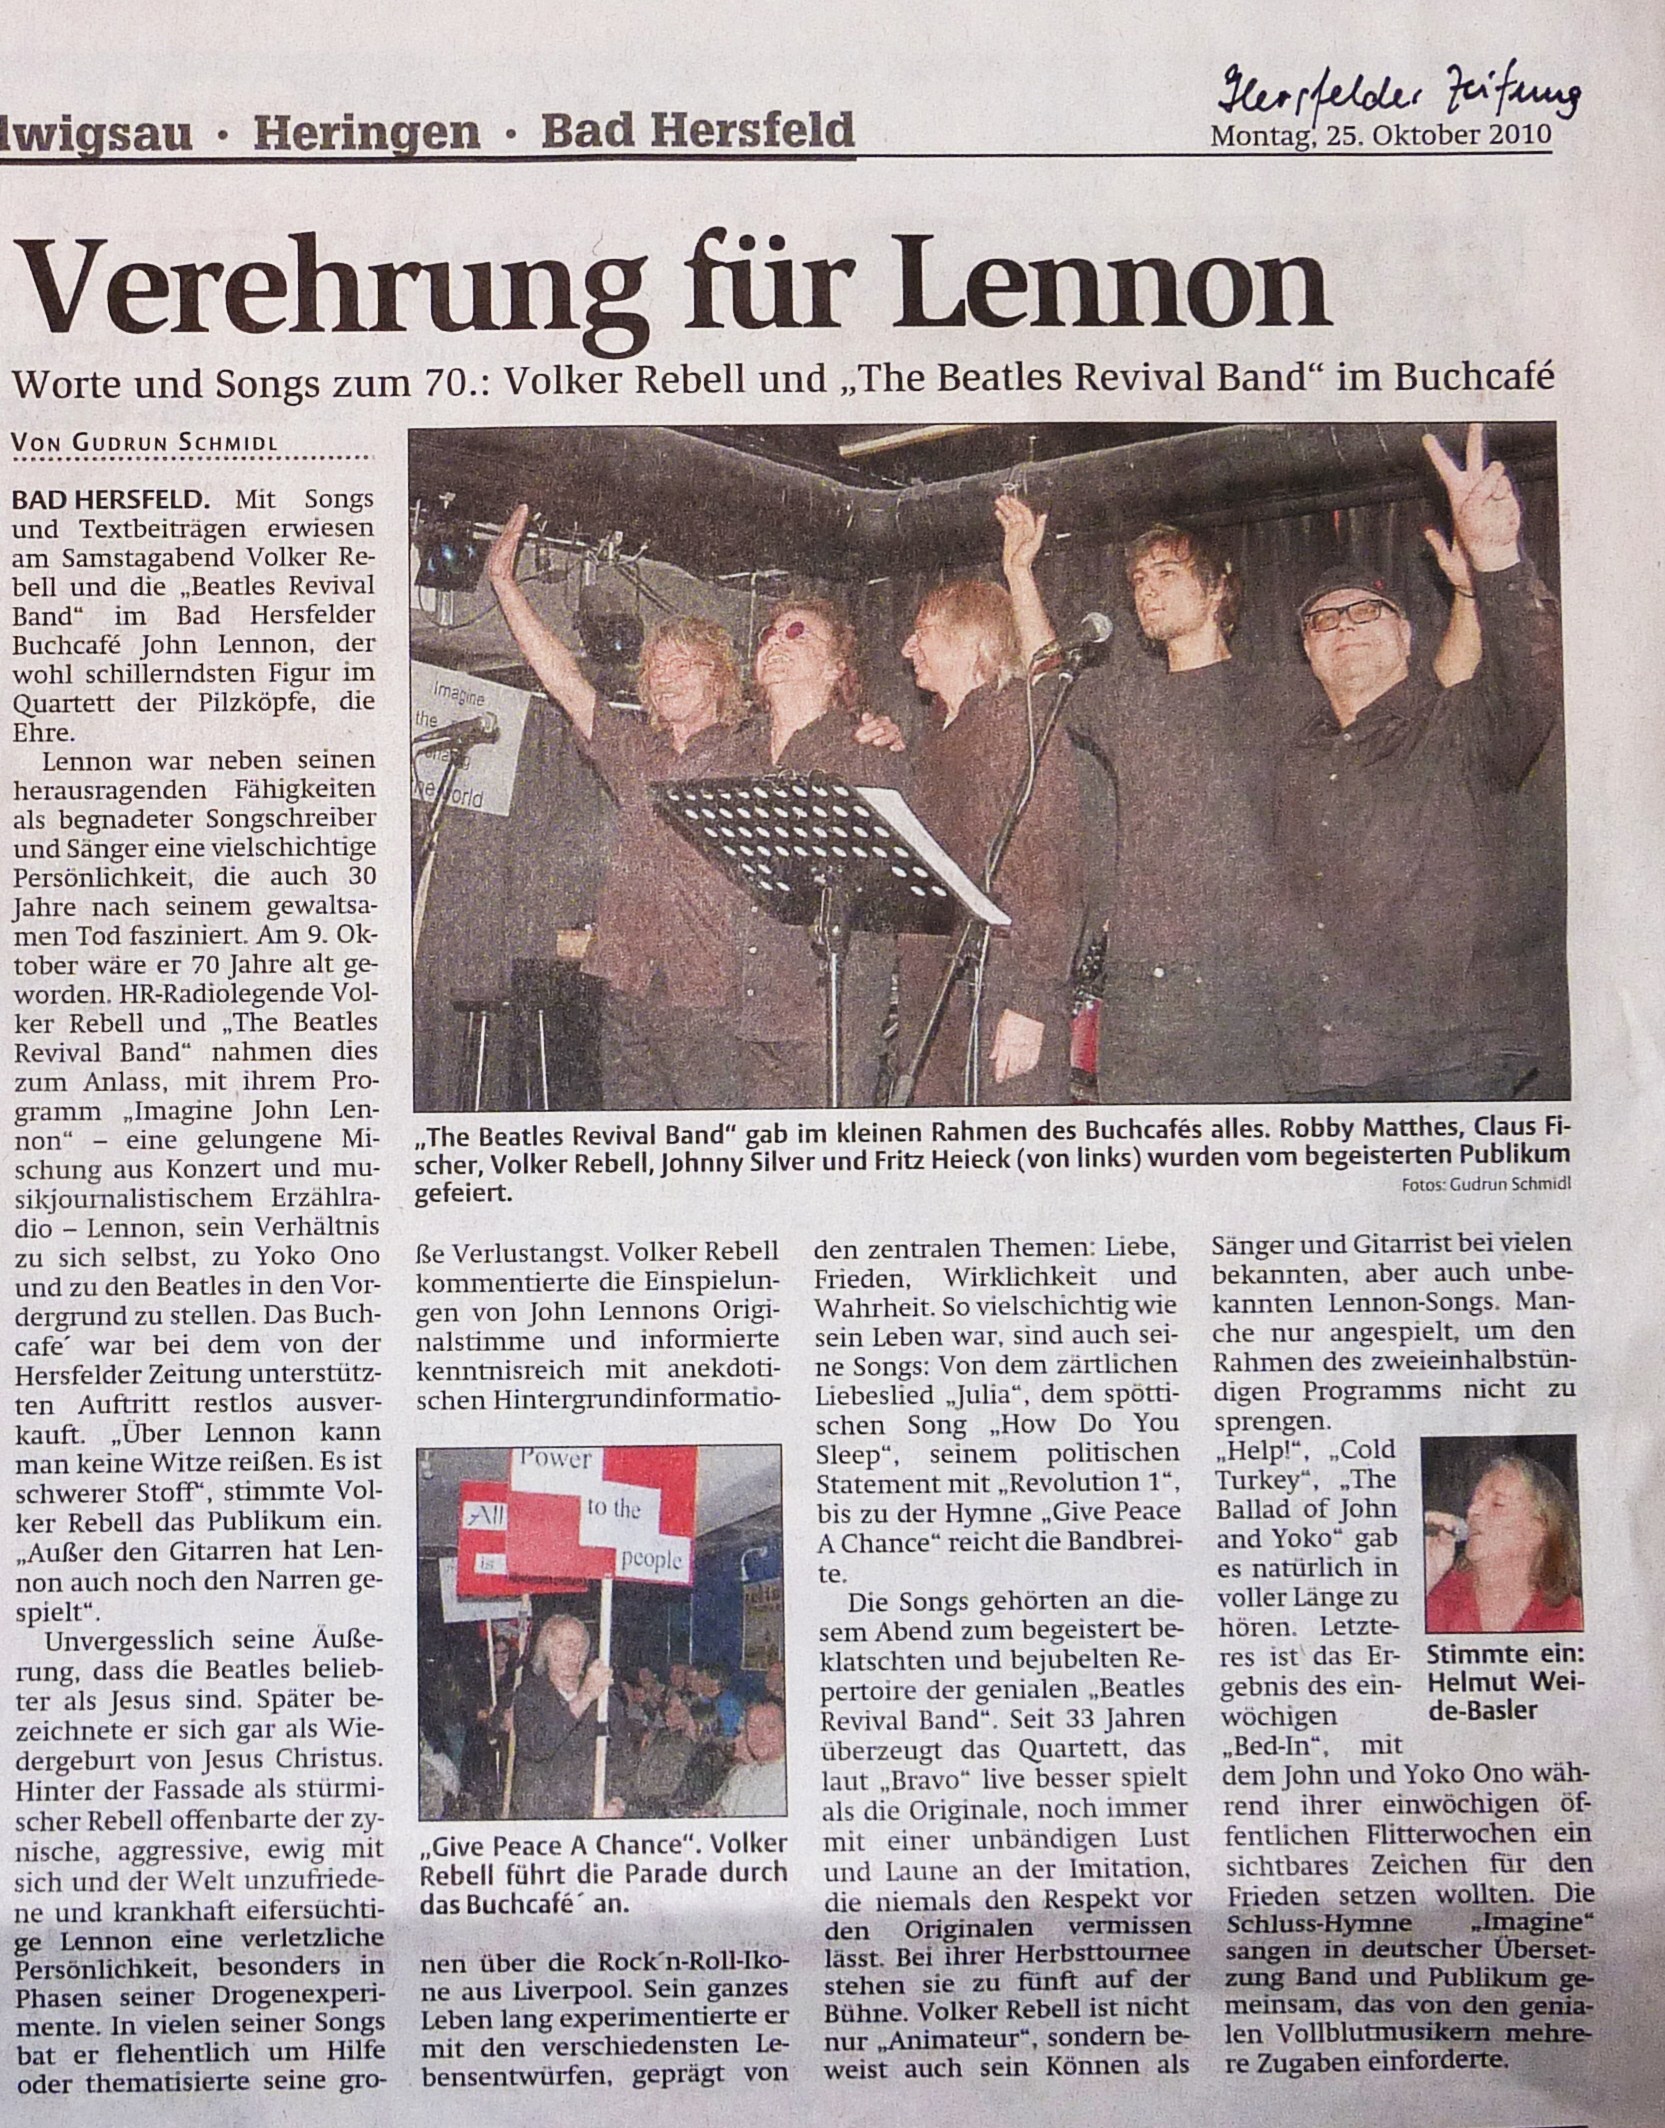 Hersfelder Zeitung